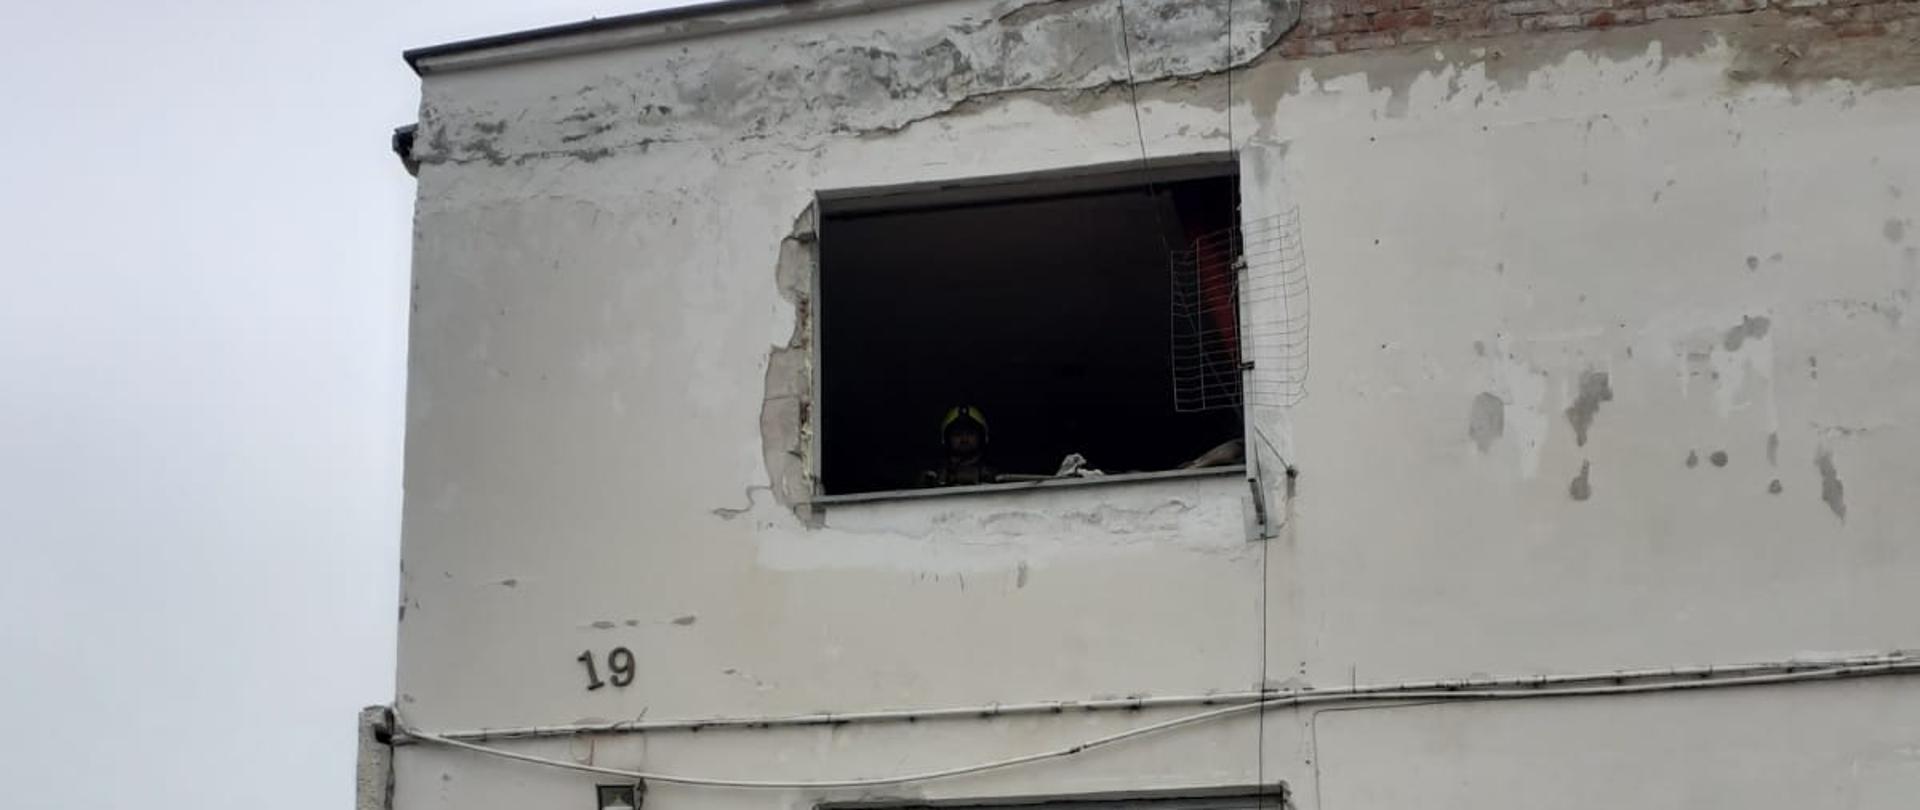 Fotografia przedstawia budynek koloru białego z uszkodzoną futryną okienną w wyniku wybuchu gazu. Na ziemi przed budynkiem leży wysadzone okno.